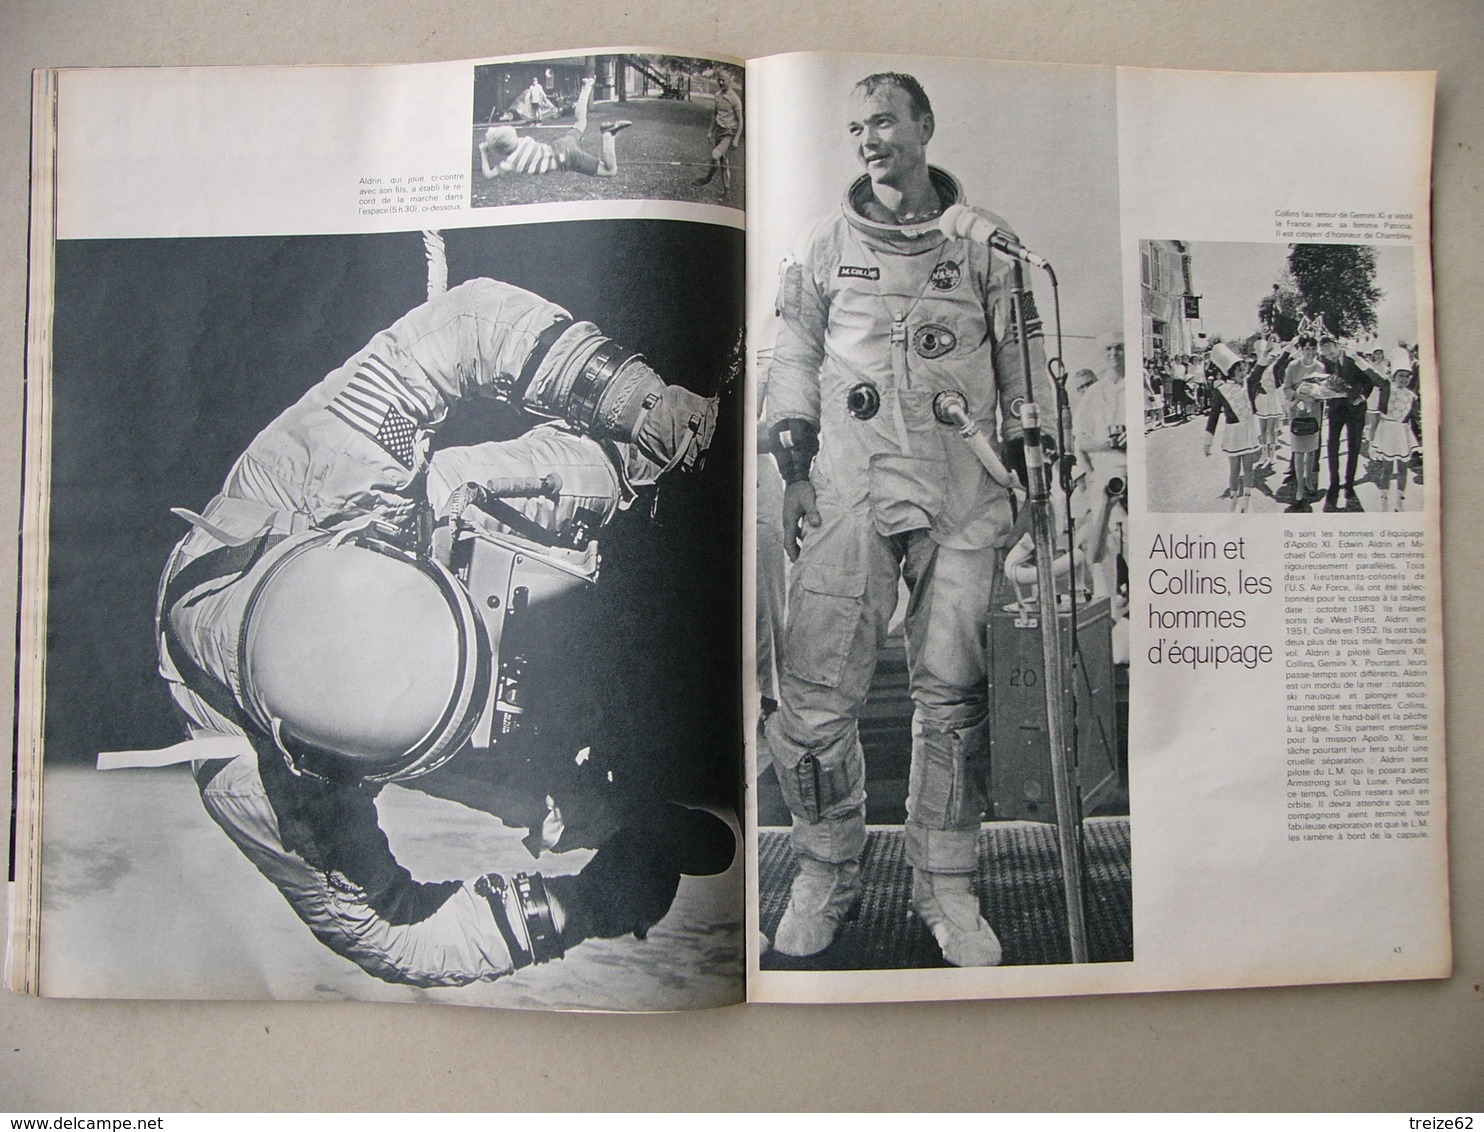 Paris Match N° 1054 19 juillet 1969 Conquérants de la Lune Apollo XI Lauzet SM Le Redoutable Merckx Maire à Peuplingues